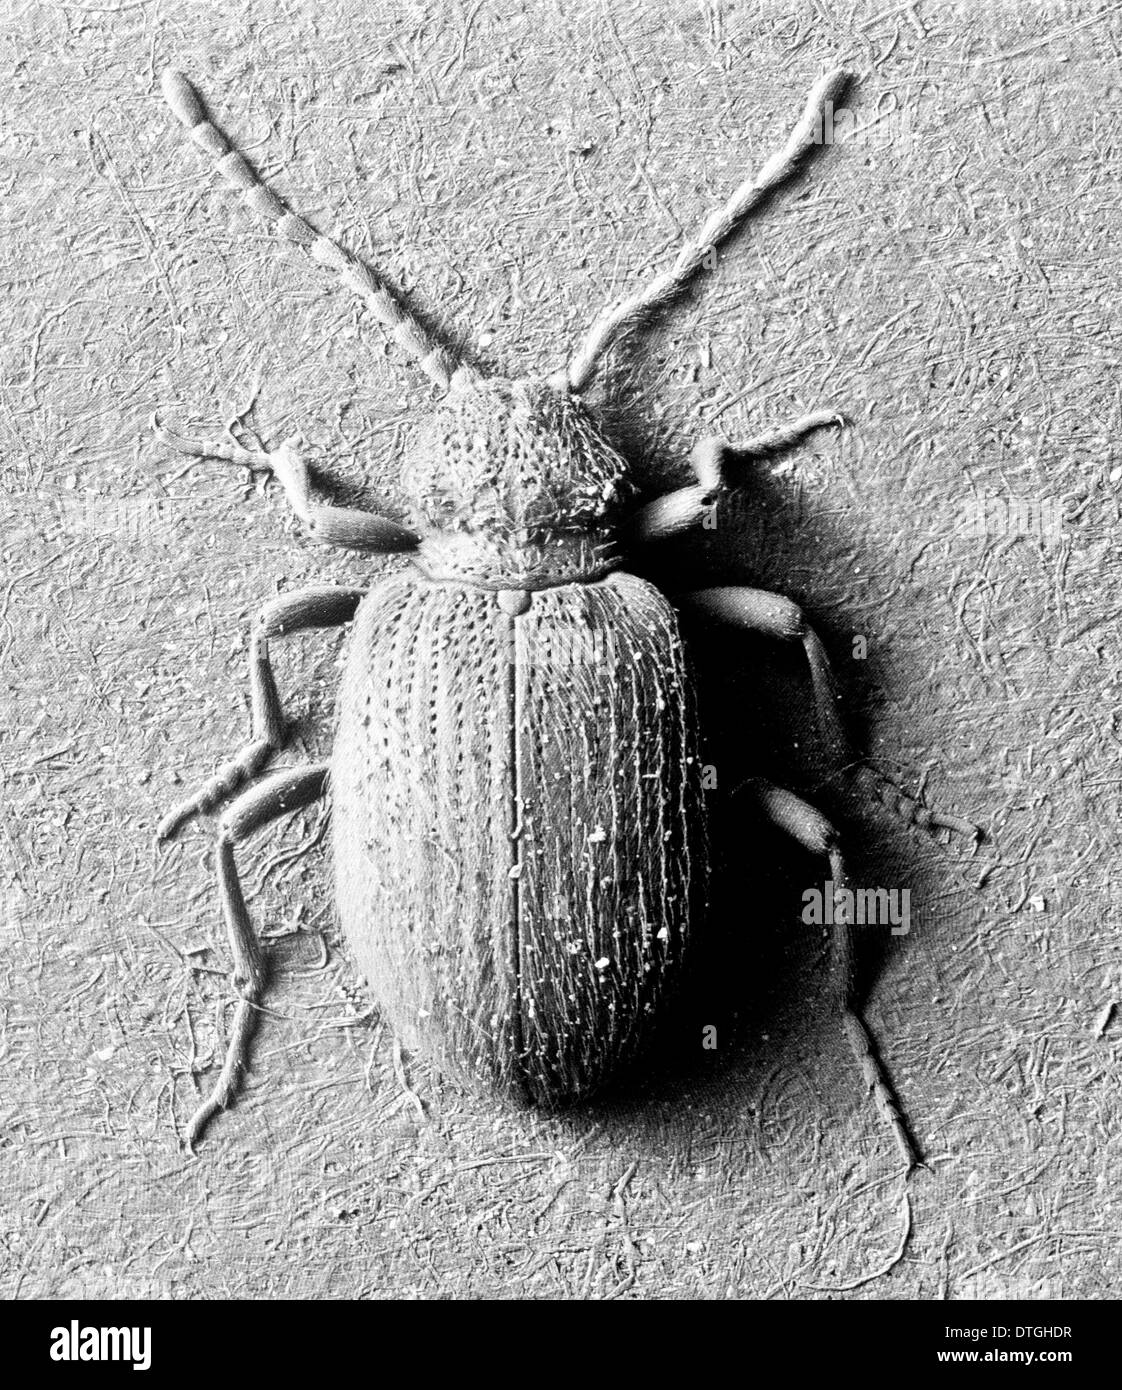 Tectus dorcus parallelipipedus ou dorcus, spider beetle Banque D'Images